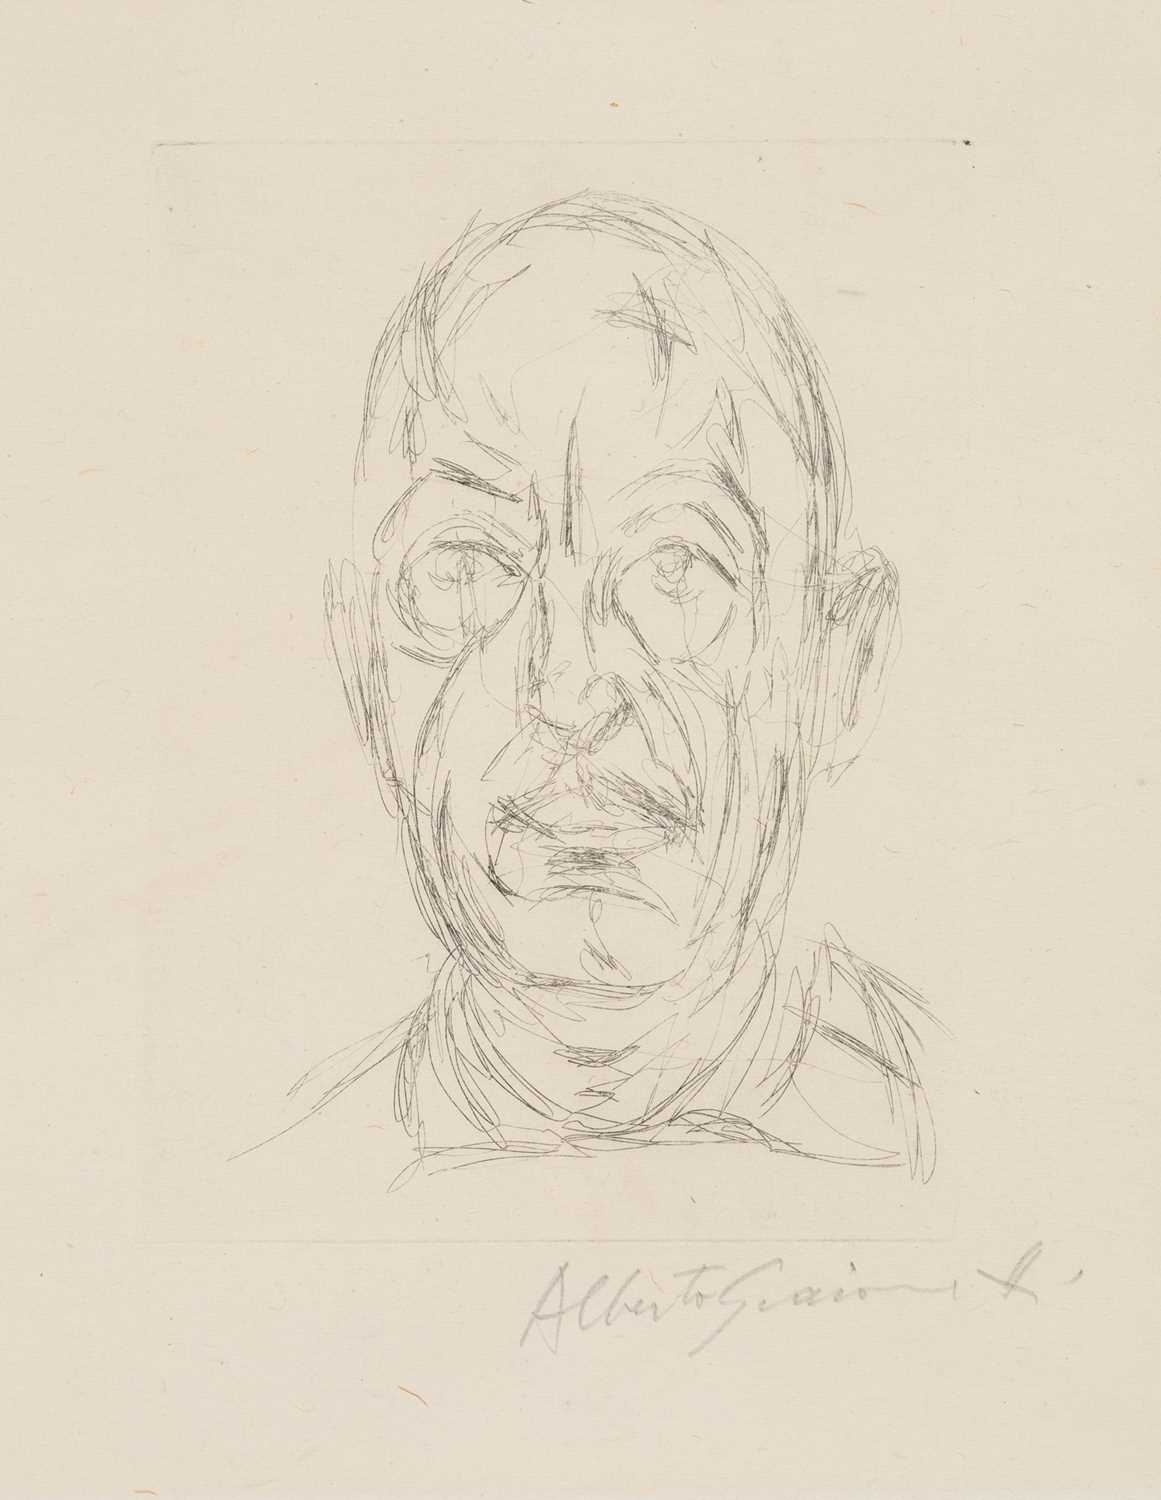 Lot 35 - Alberto Giacometti (1901-1966)